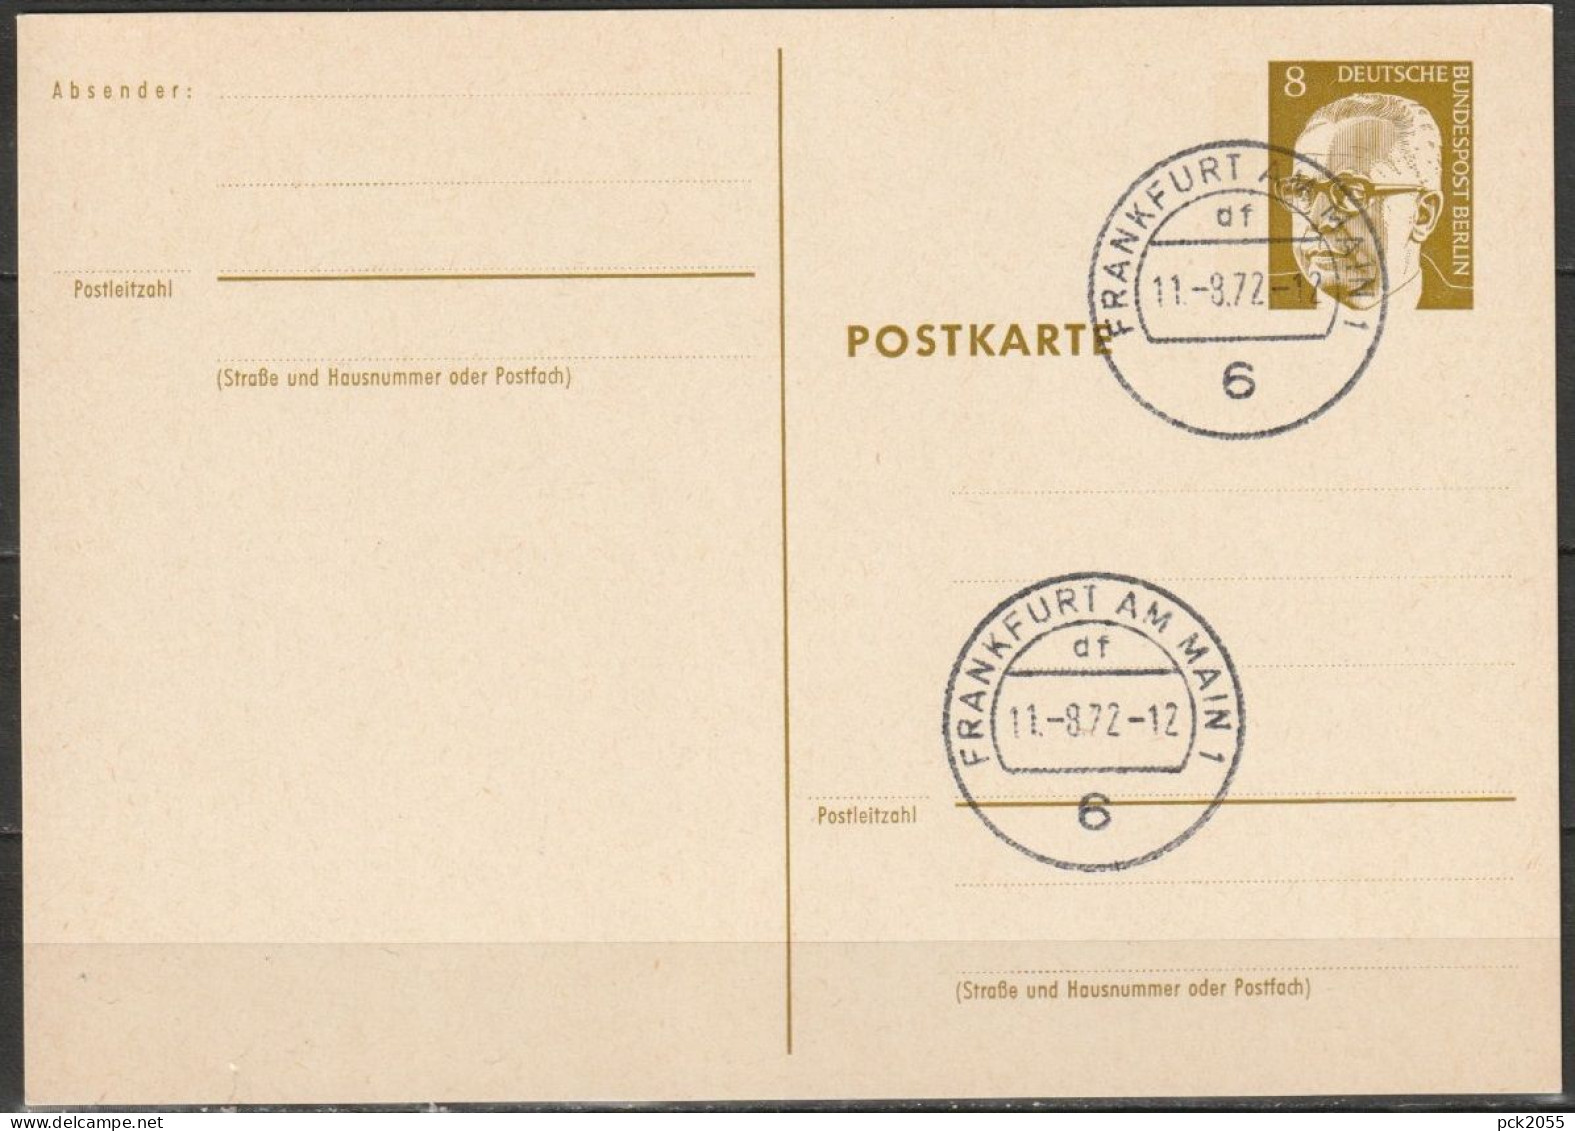 Berlin Ganzsache 1971/72 Mi.-Nr. P 80 Tagesstempel FRANKFURT 11.8.72  ( PK 201 ) - Postales - Usados